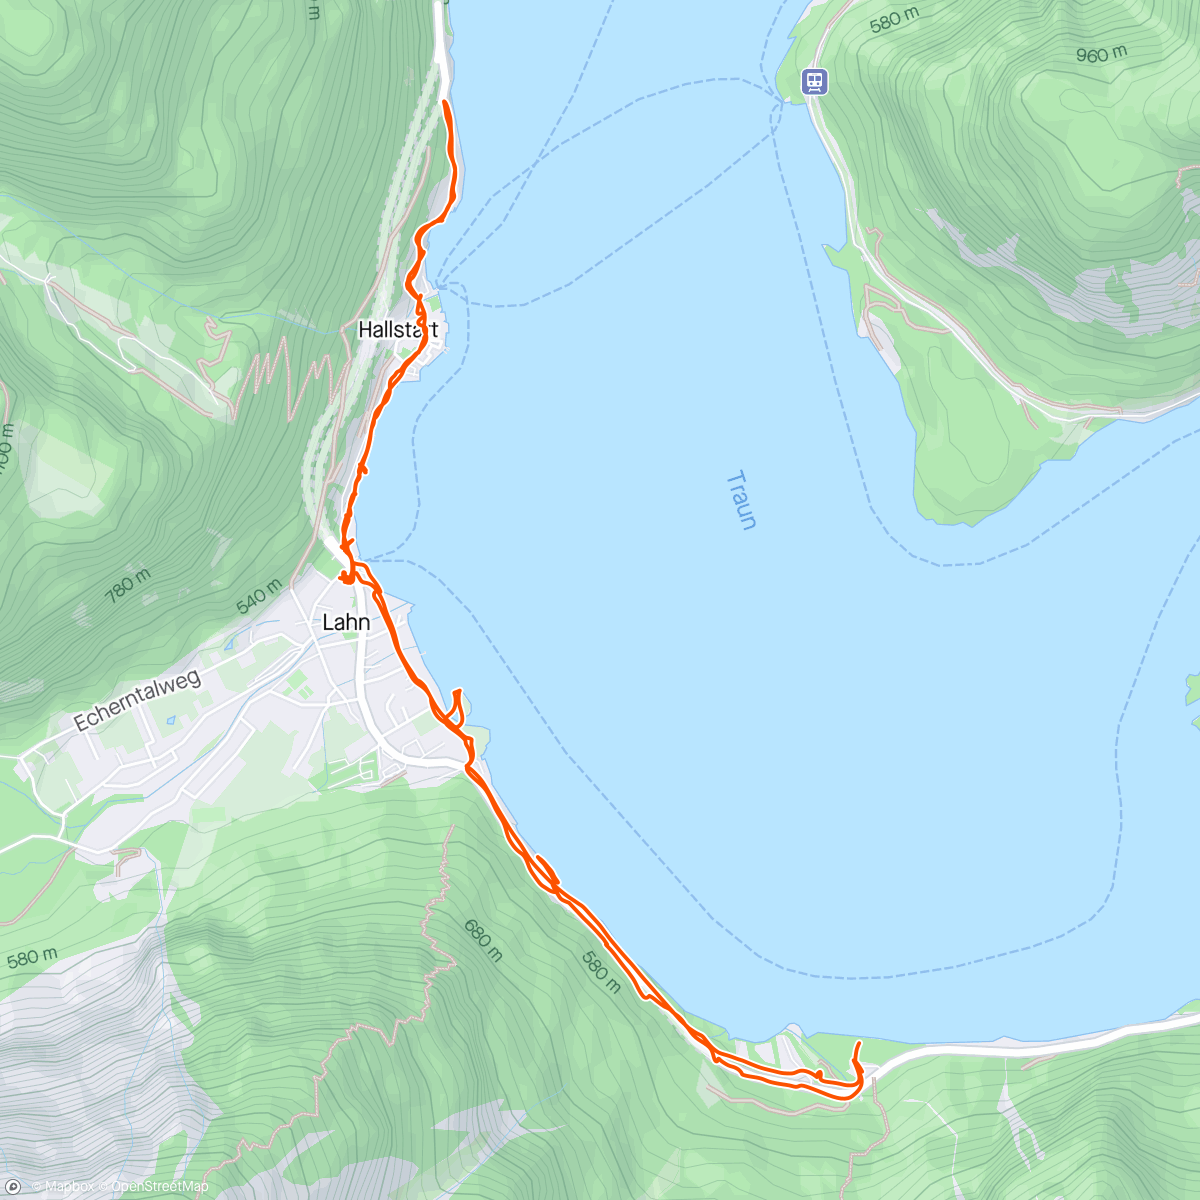 Mappa dell'attività Hallstatt